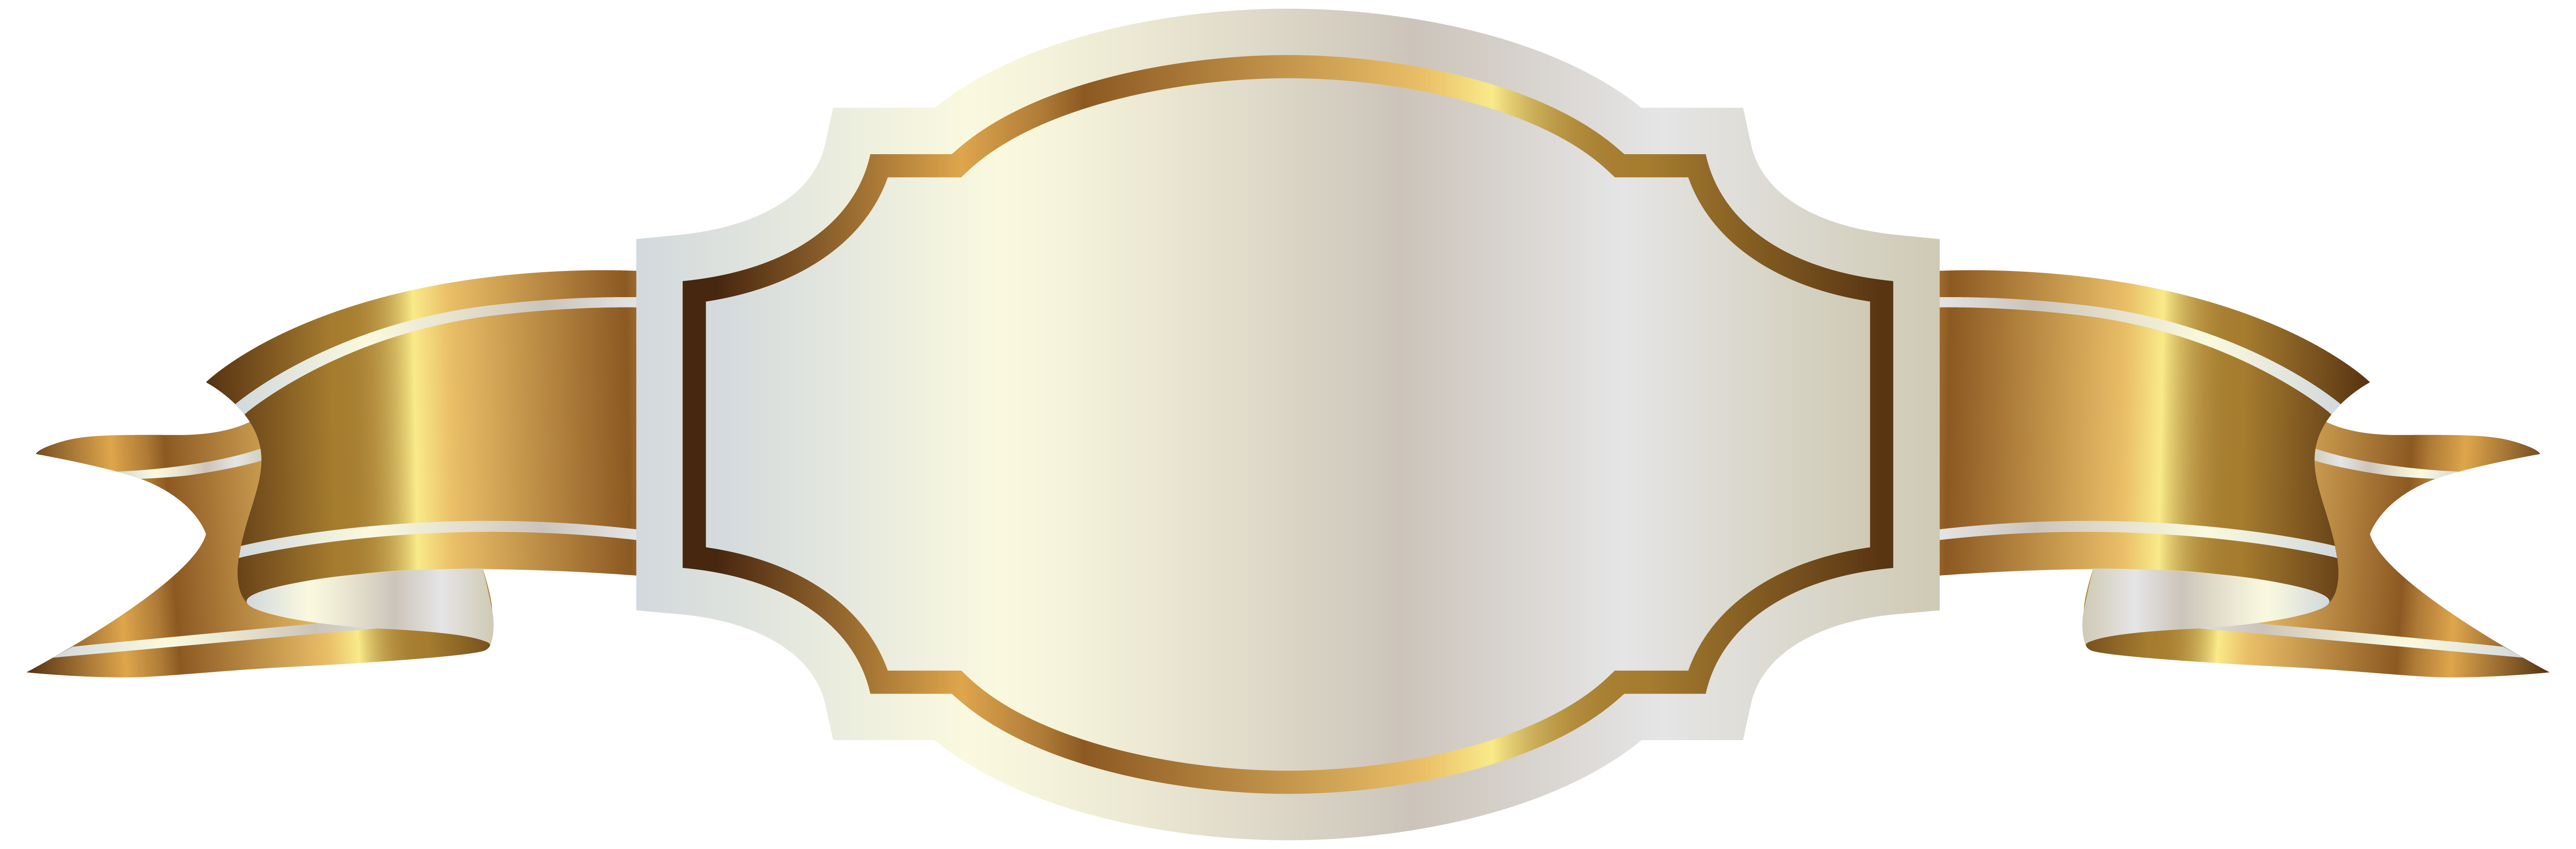 Image Transparente PNG étiquette Golden